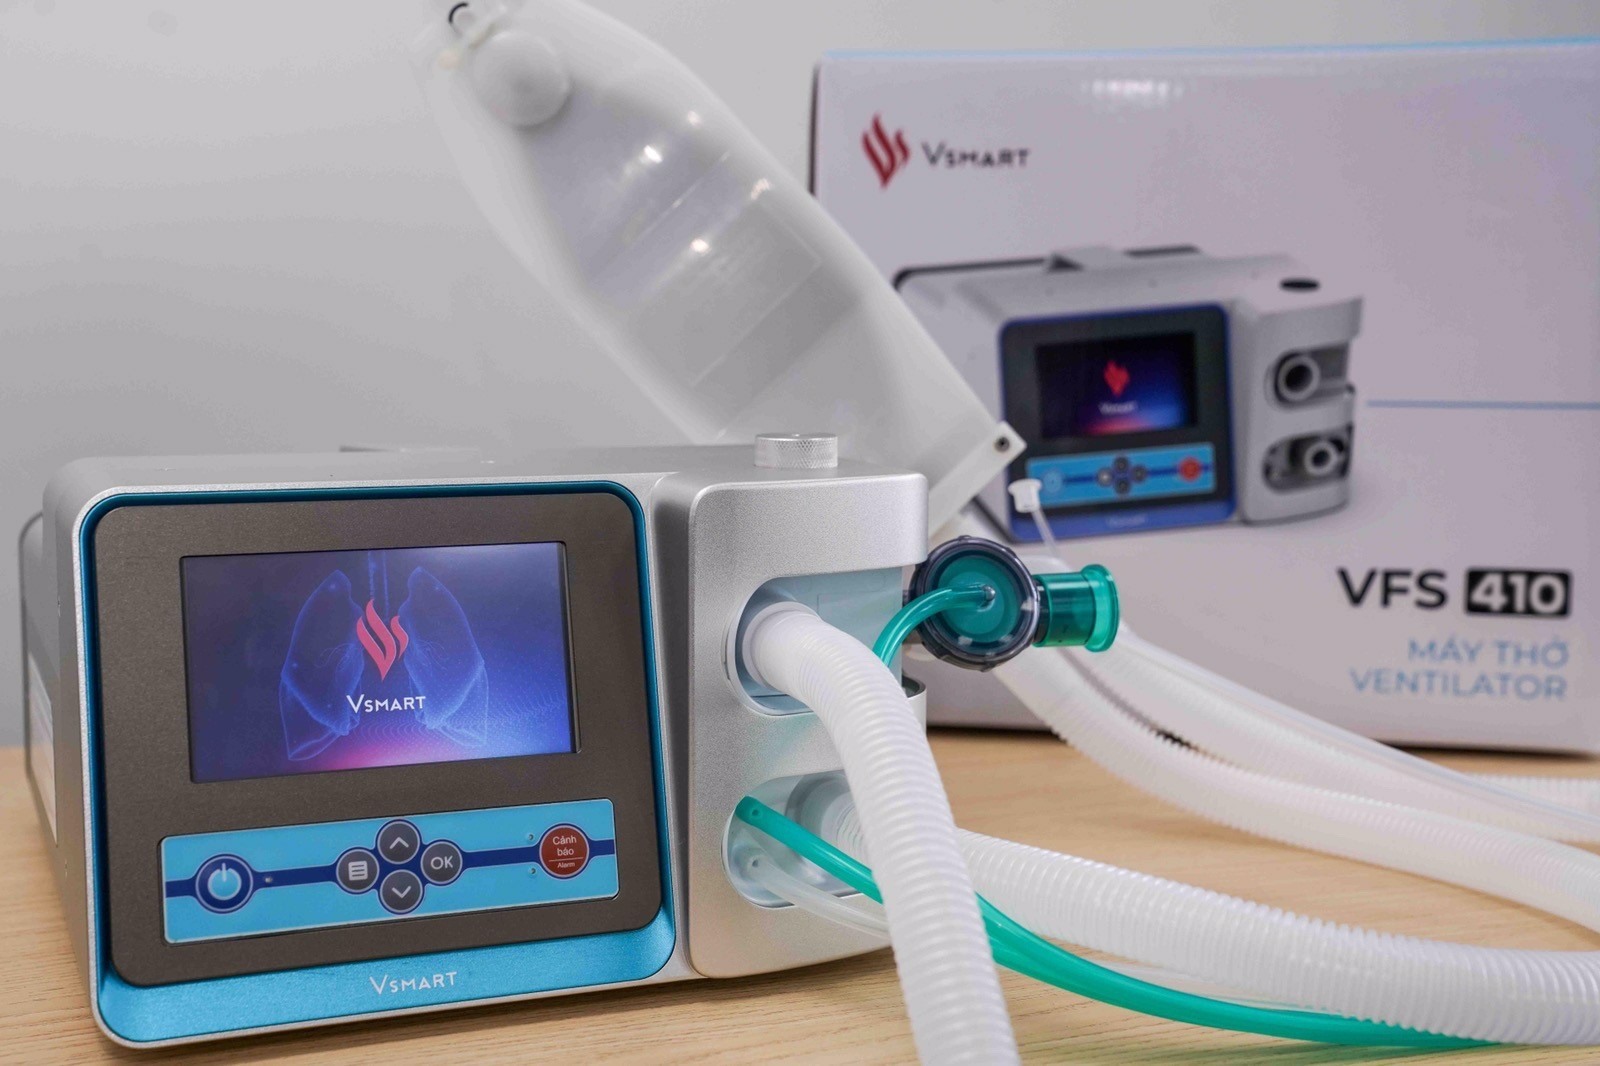 Sự linh hoạt của Vingroup trong việc sử dụng nền tảng công nghệ - công nghiệp để sản xuất máy thở được truyền thông quốc tế đánh giá cao